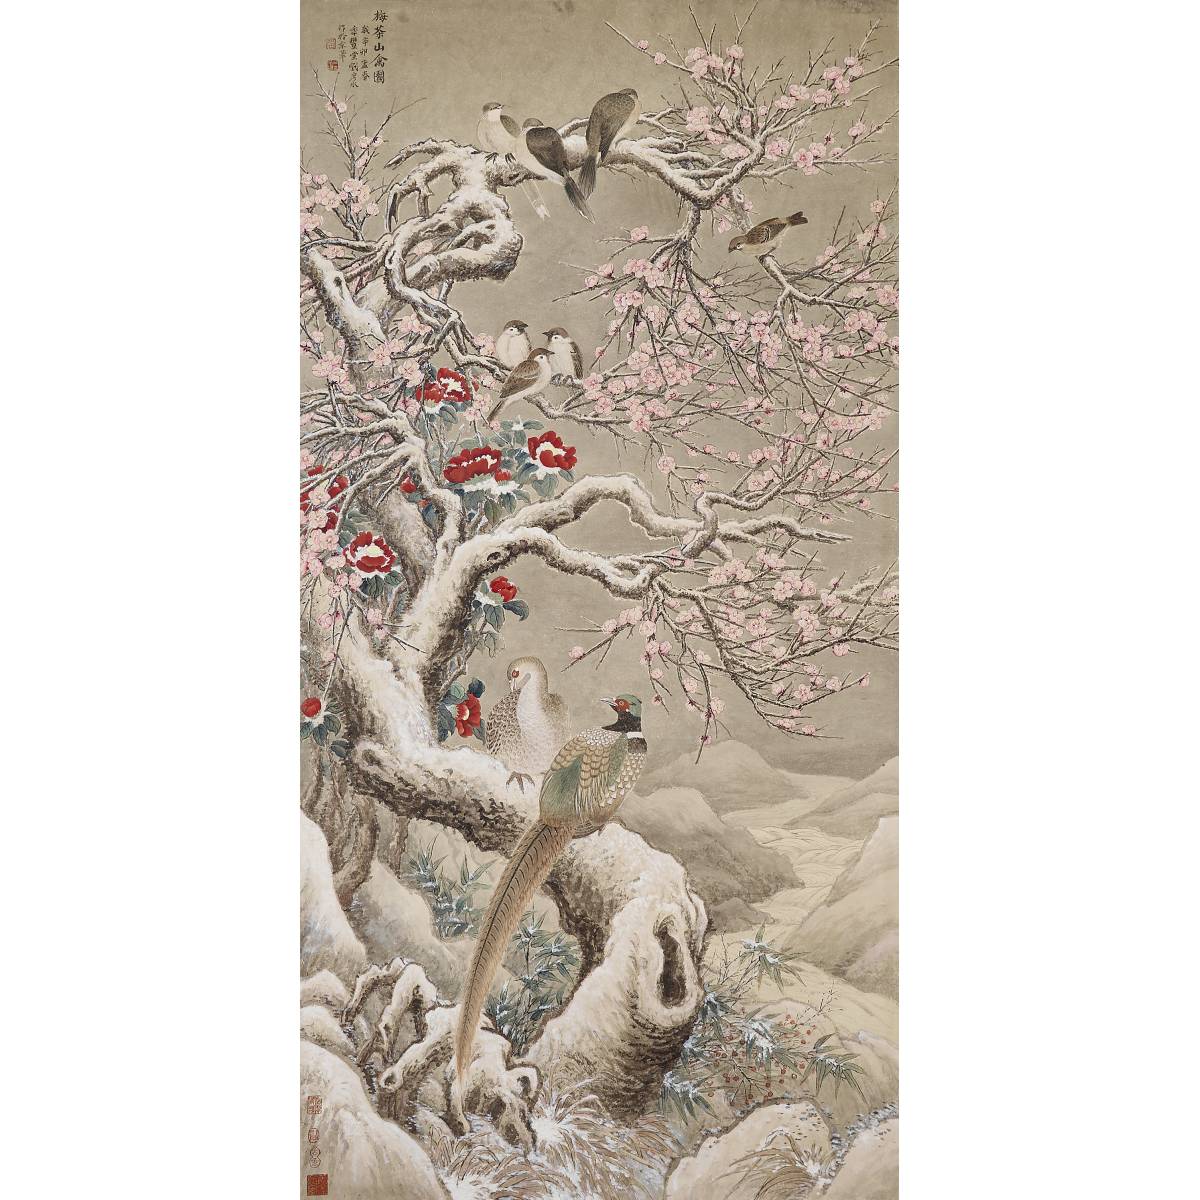 54. 梅茶山禽图 Birds on Plum Tree